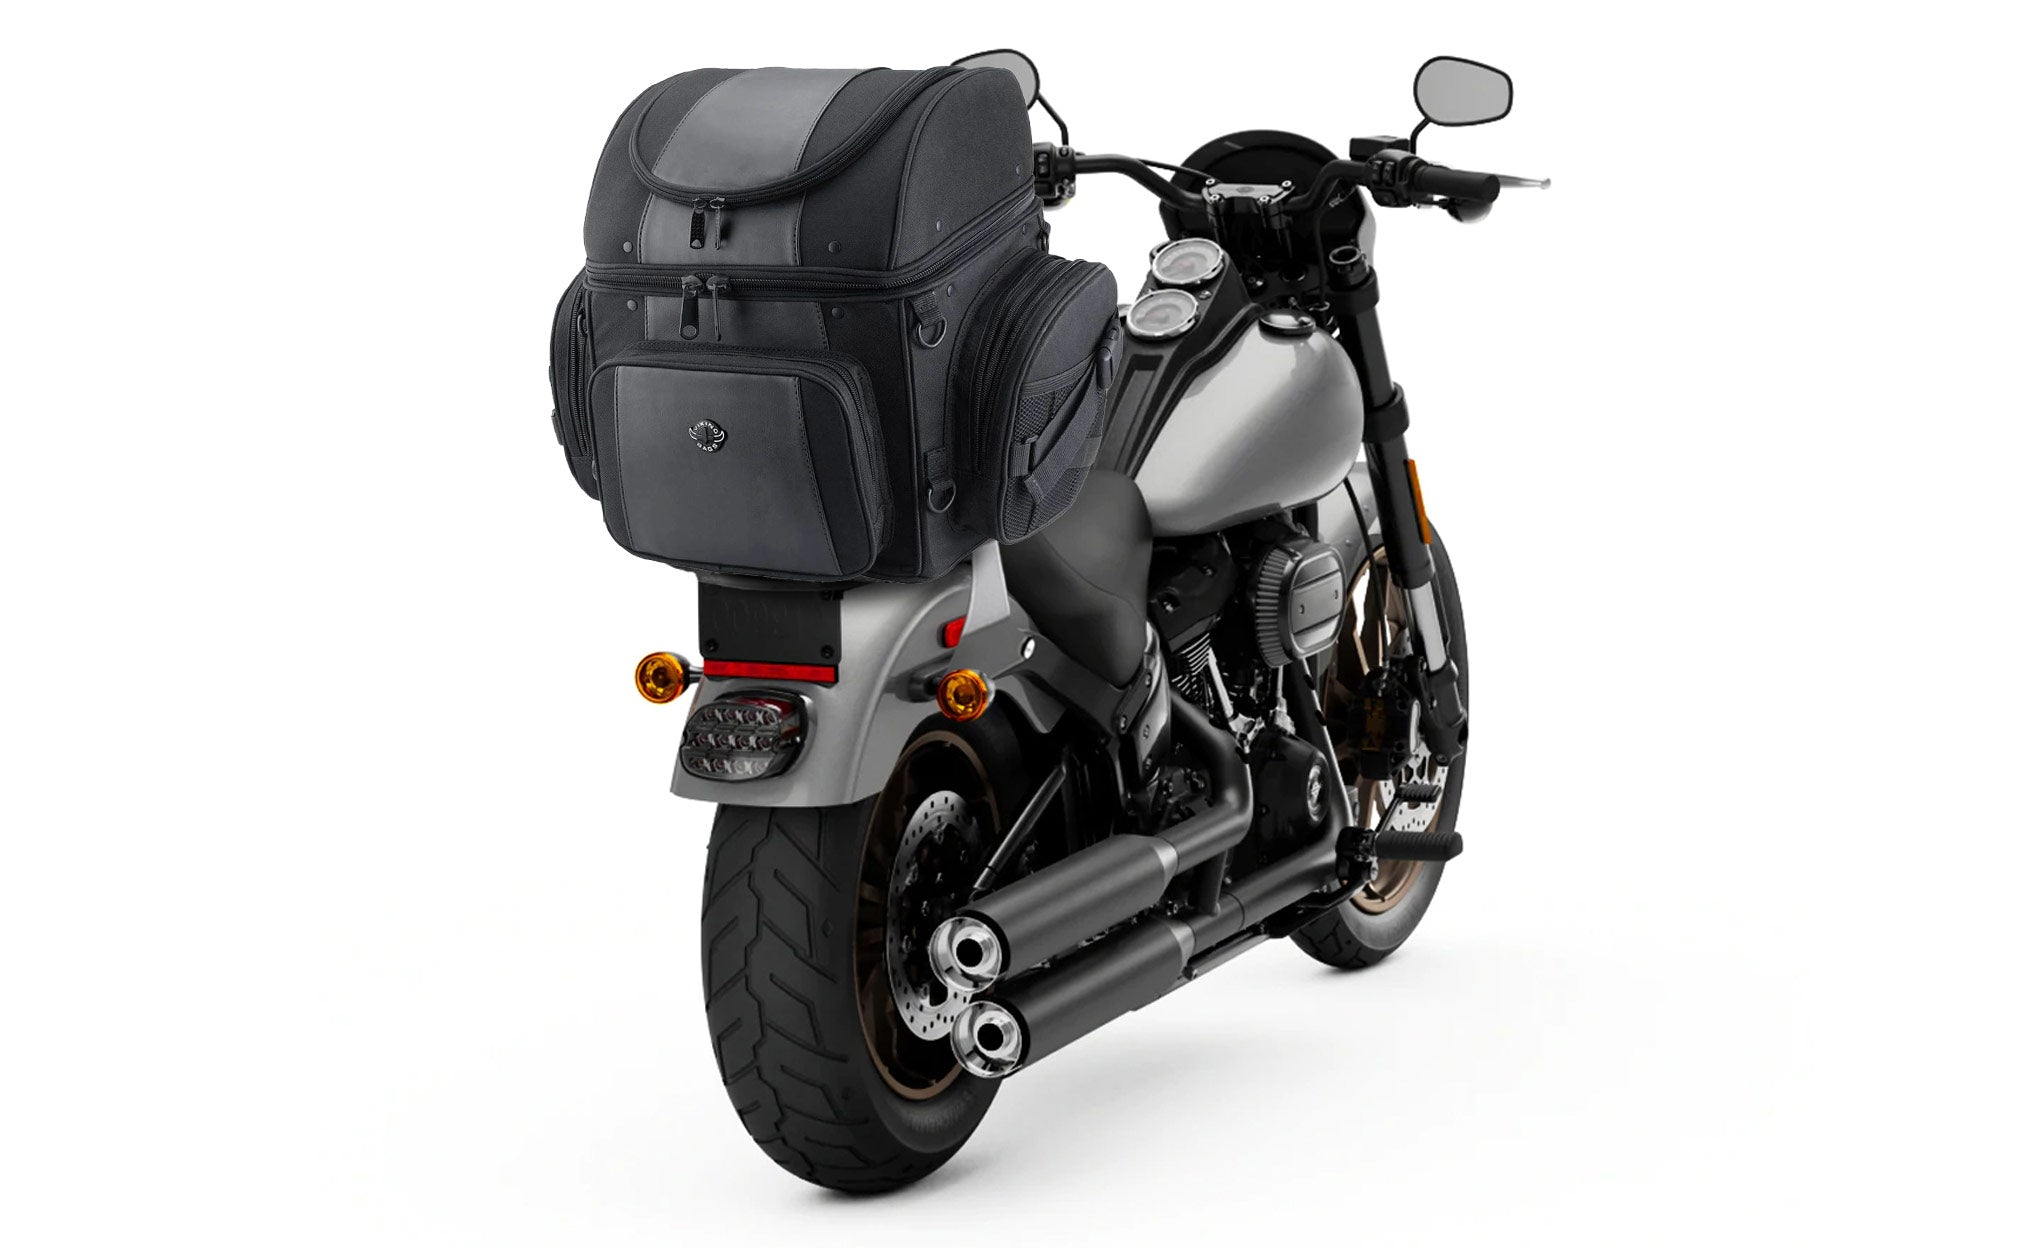 Viking Galleon Large Honda Motorcycle Tail Bag Bag on Bike View @expand